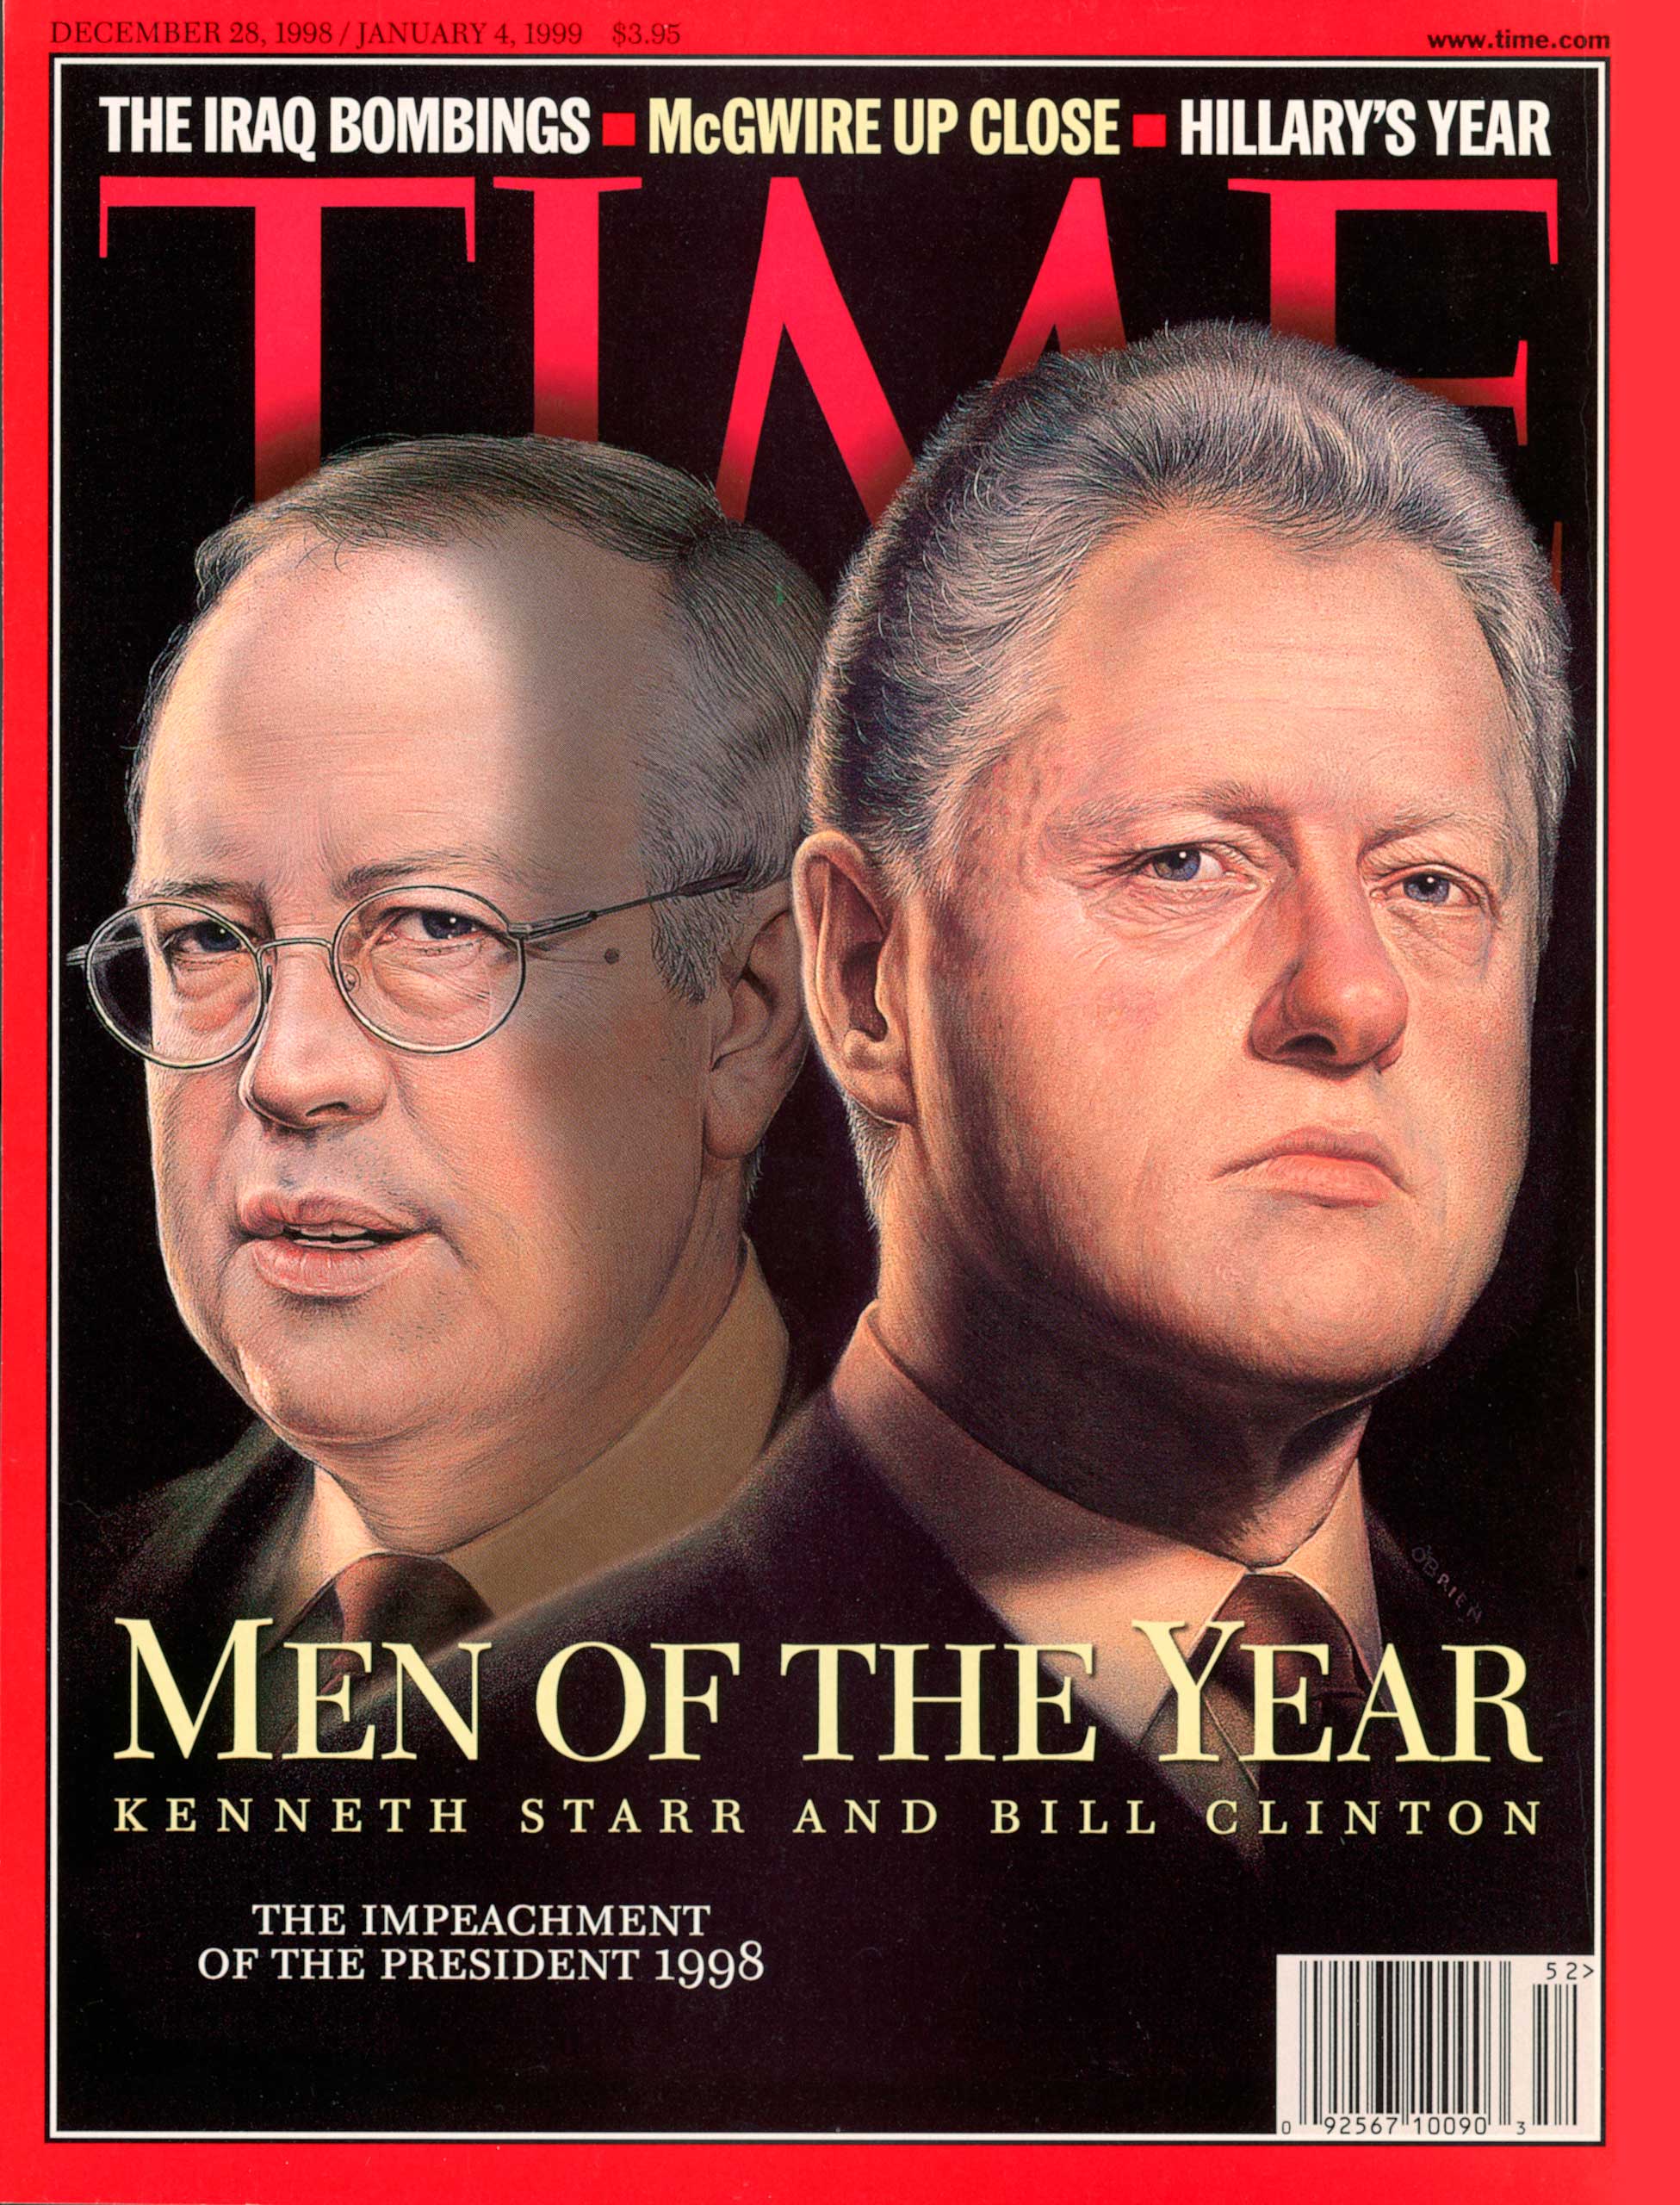 1998: Kenneth Starr ad Bill Clinton